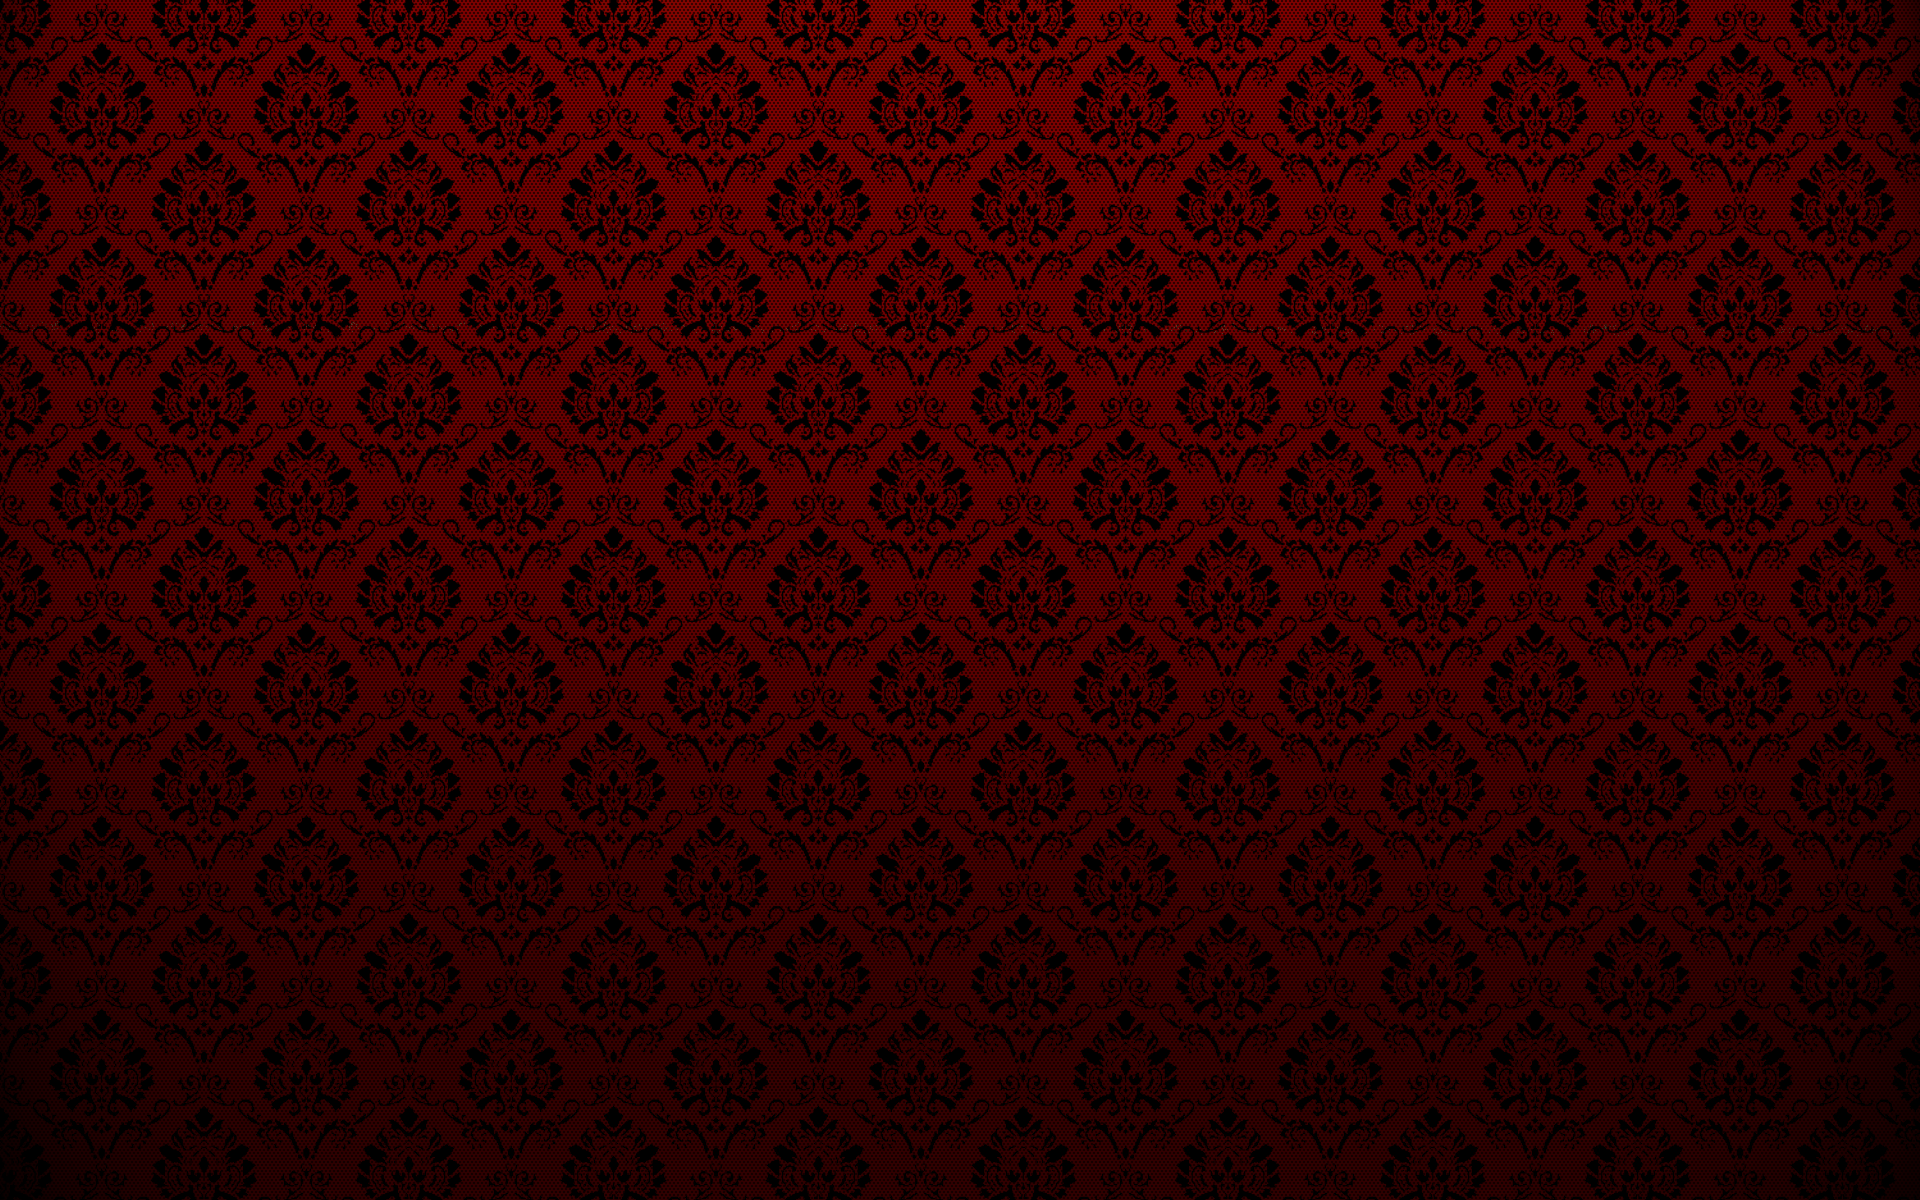 Red Texture wallpaper. Red wallpaper, Textured wallpaper, Victorian wallpaper